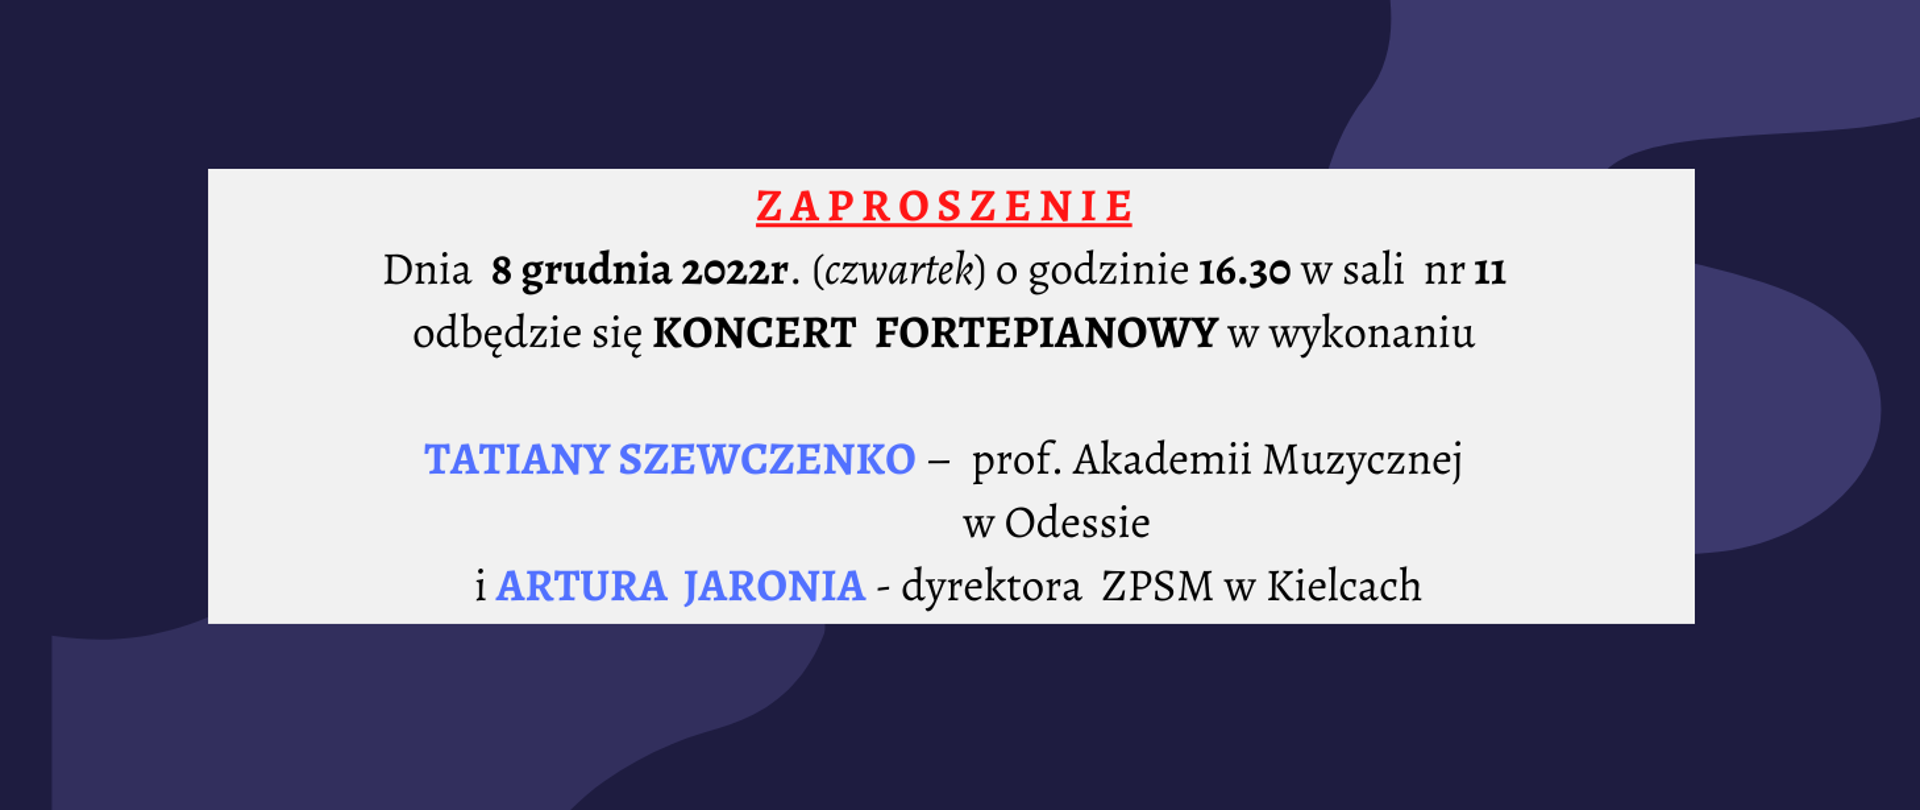 grafika przedstawiająca informacje o koncercie fortepianowym w dniu 8 grudnia 2022. Wykonawcy: Tatiana Szewczenko - prof. Akademii Muzycznej w Odessie i Artur Jaroń - dyrektor ZPSM w Kielcach.